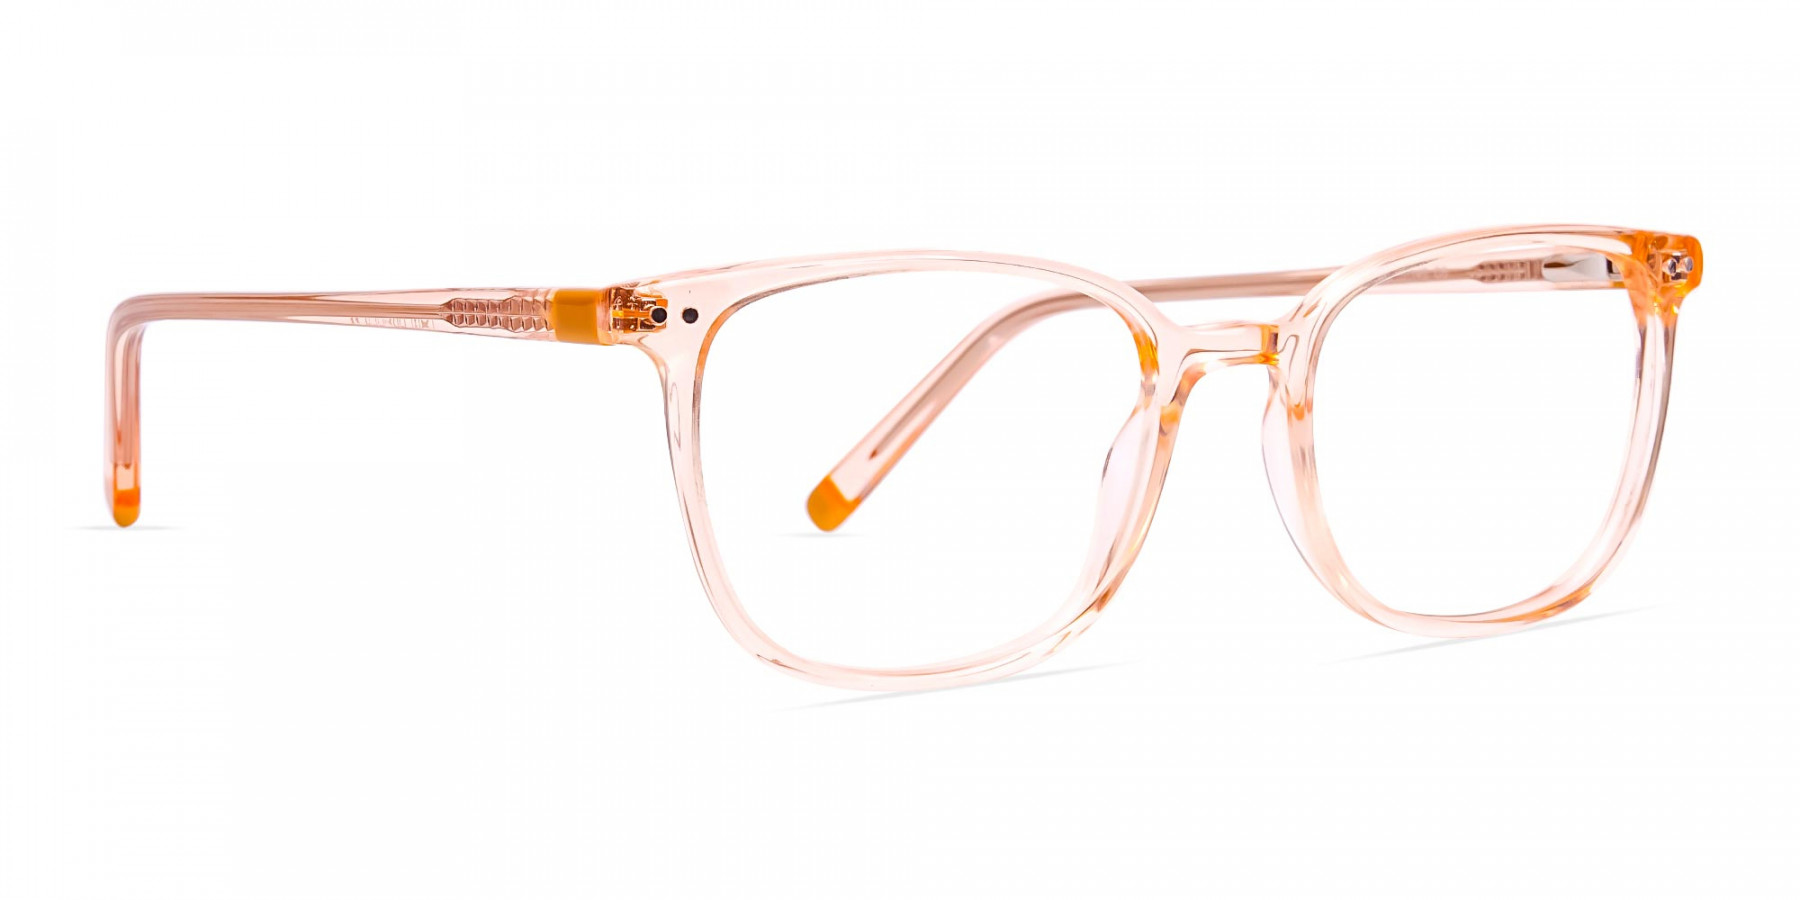 Crystal-clear-and-Transparent-Orange-Rectangular-Glasses-Frames-1